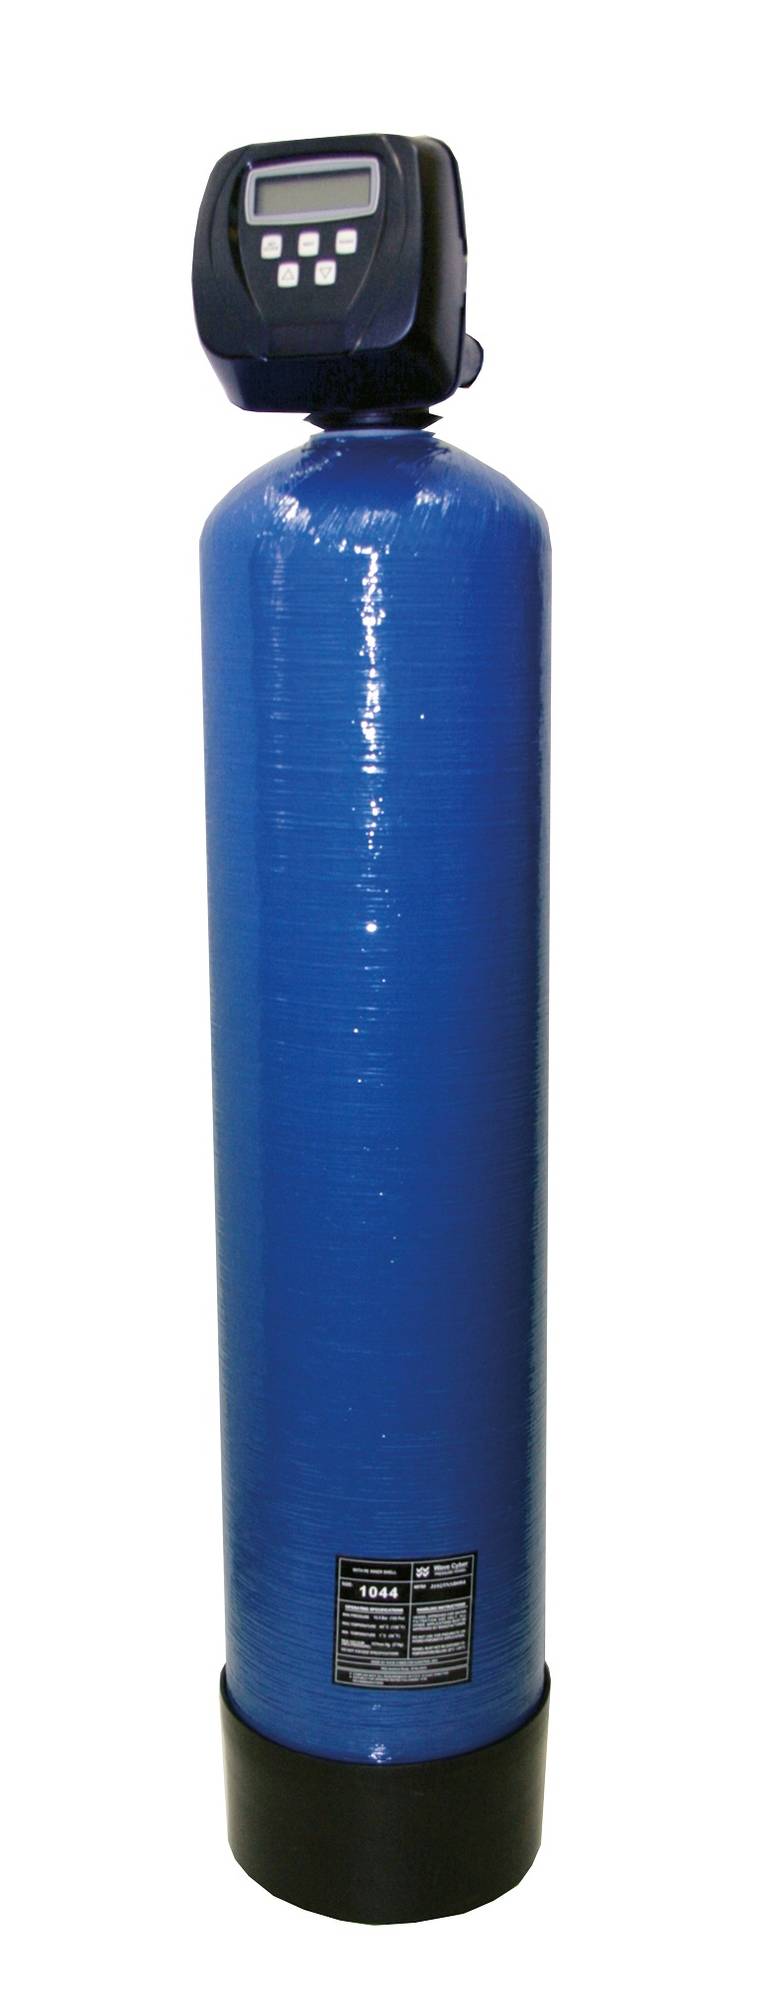 Sloupcový filtr - pro odstraňování chloru z vody Typ: IVAR.DEFEMN 030